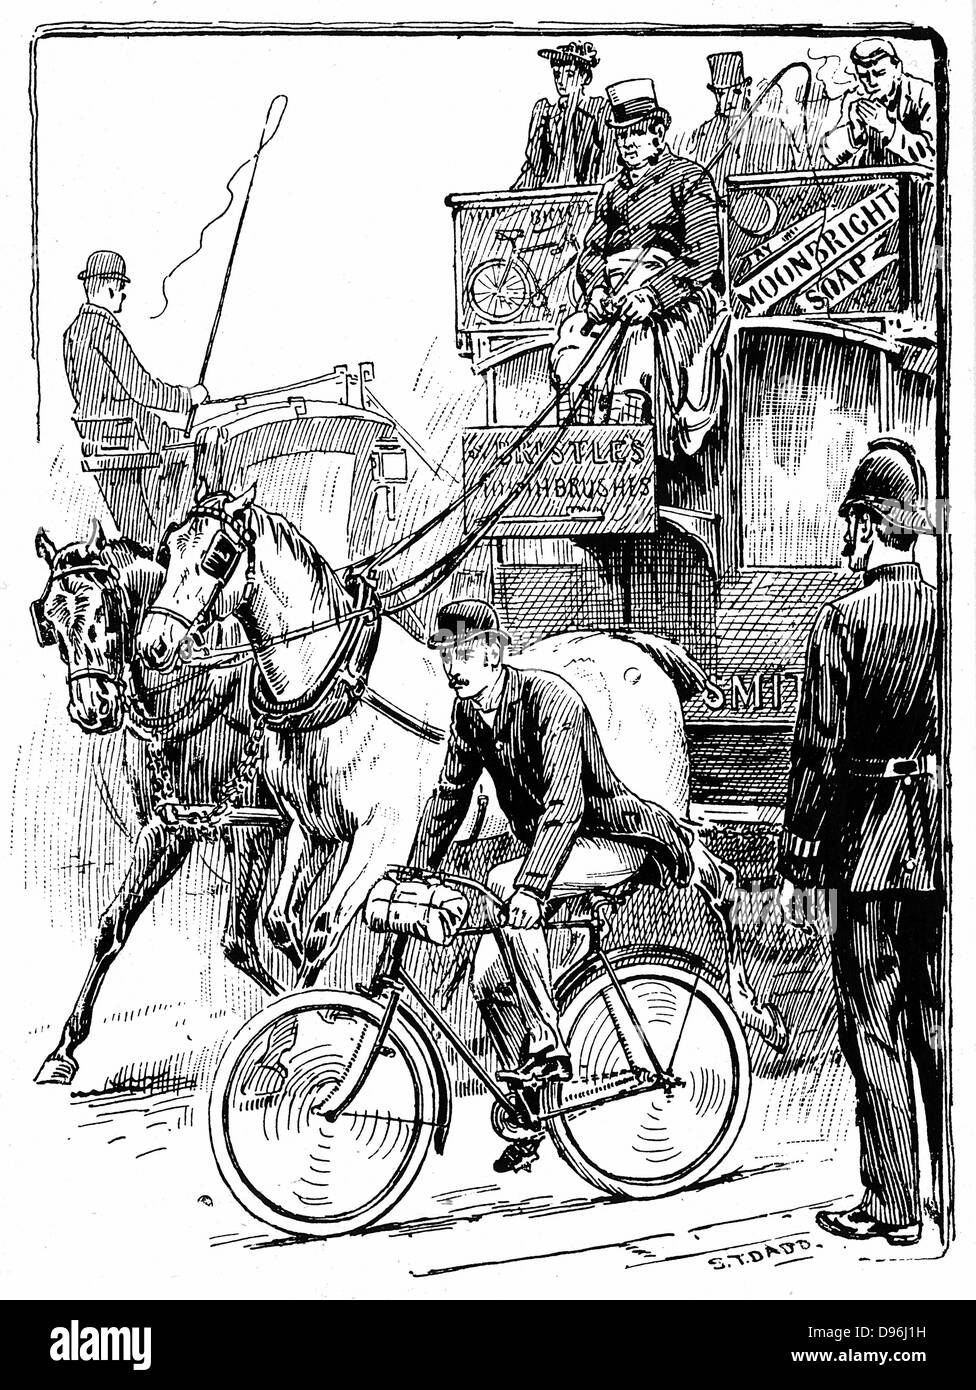 Ciclista nella trafficata e traffico di Londra in sella a una macchina di Rover tipo di sicurezza. Horse bus (omnibus) è il sorpasso di lui. Scena osservata connestabile di polizia. Illustrazione da Stephen T Dadd per 'Ciclismo' Badmington Library, Londra 1895. Foto Stock